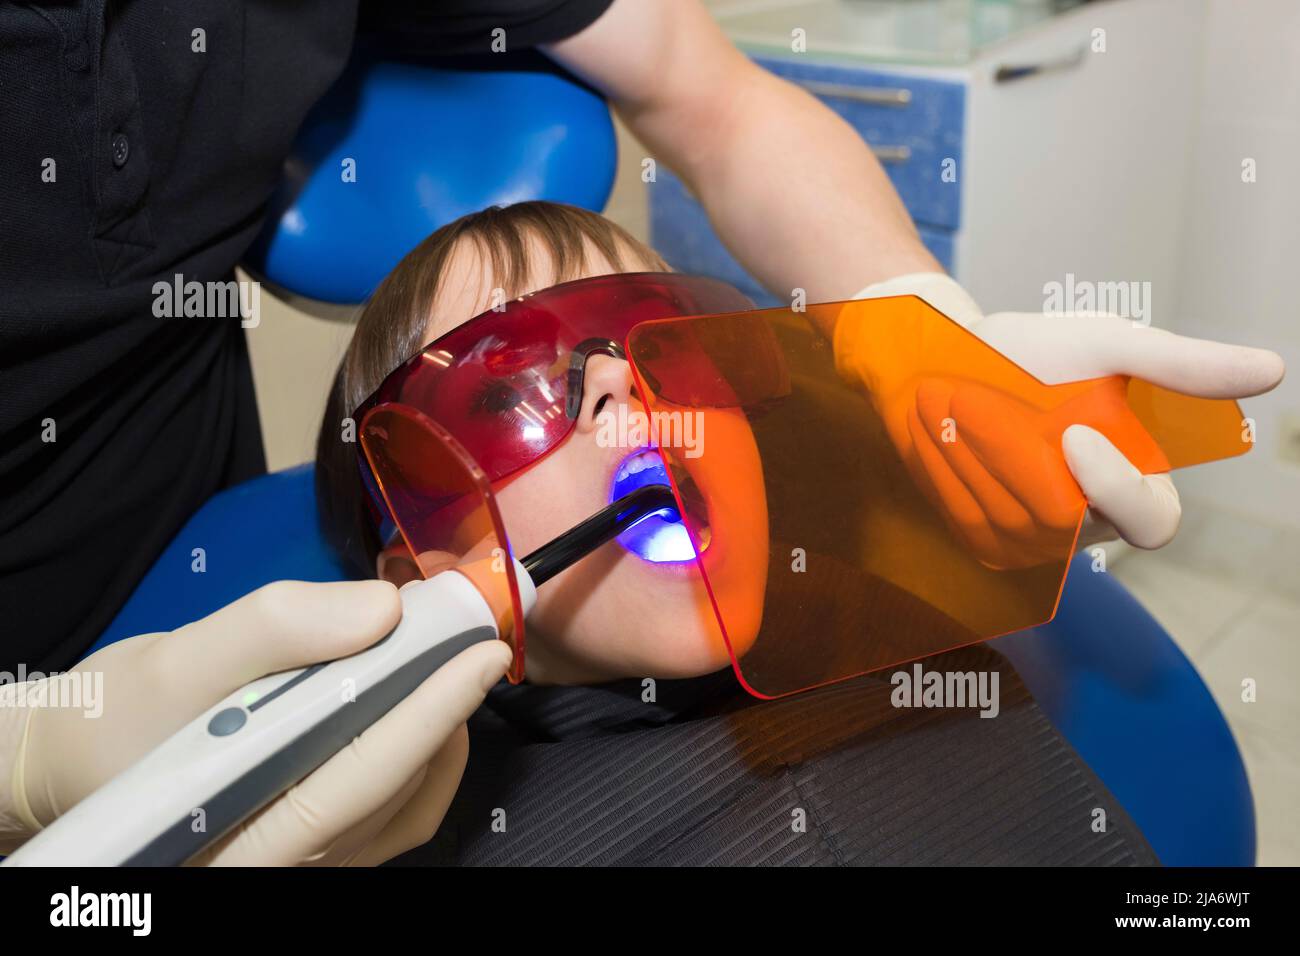 La petite fille reçoit un traitement médical de l'stomatologiste, faisant la procédure avec la lumière UV de cure dentaire en clinique Banque D'Images